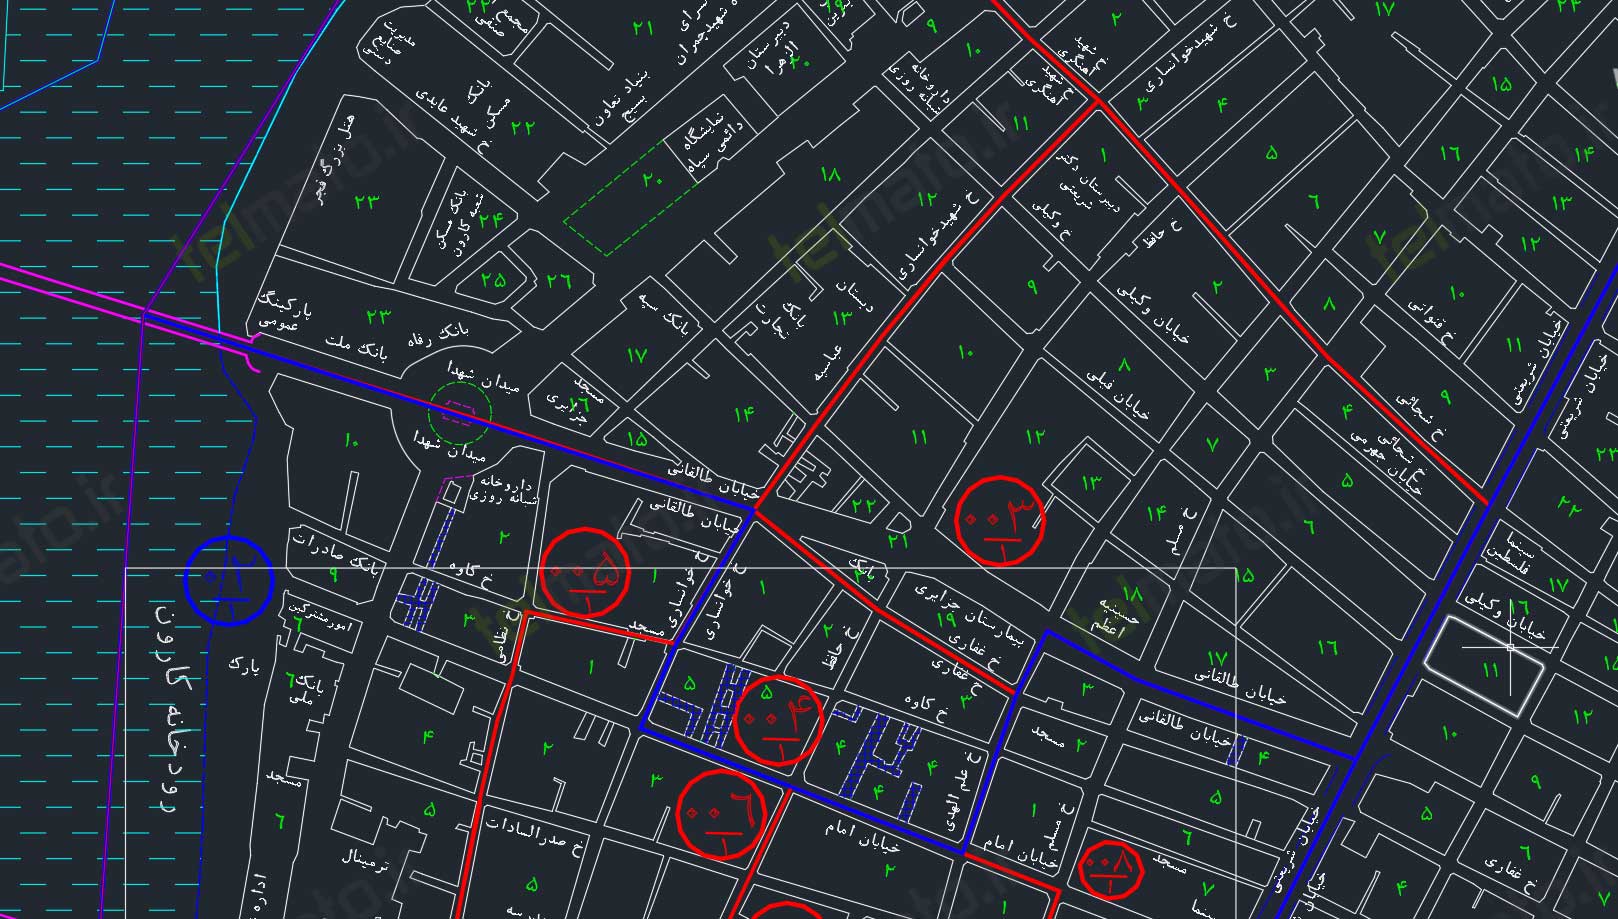 دانلود رایگان نقشه اتوکد شهر اهواز ahvaz autocad map DWG + دانلود فایل طرح تفضیلی 